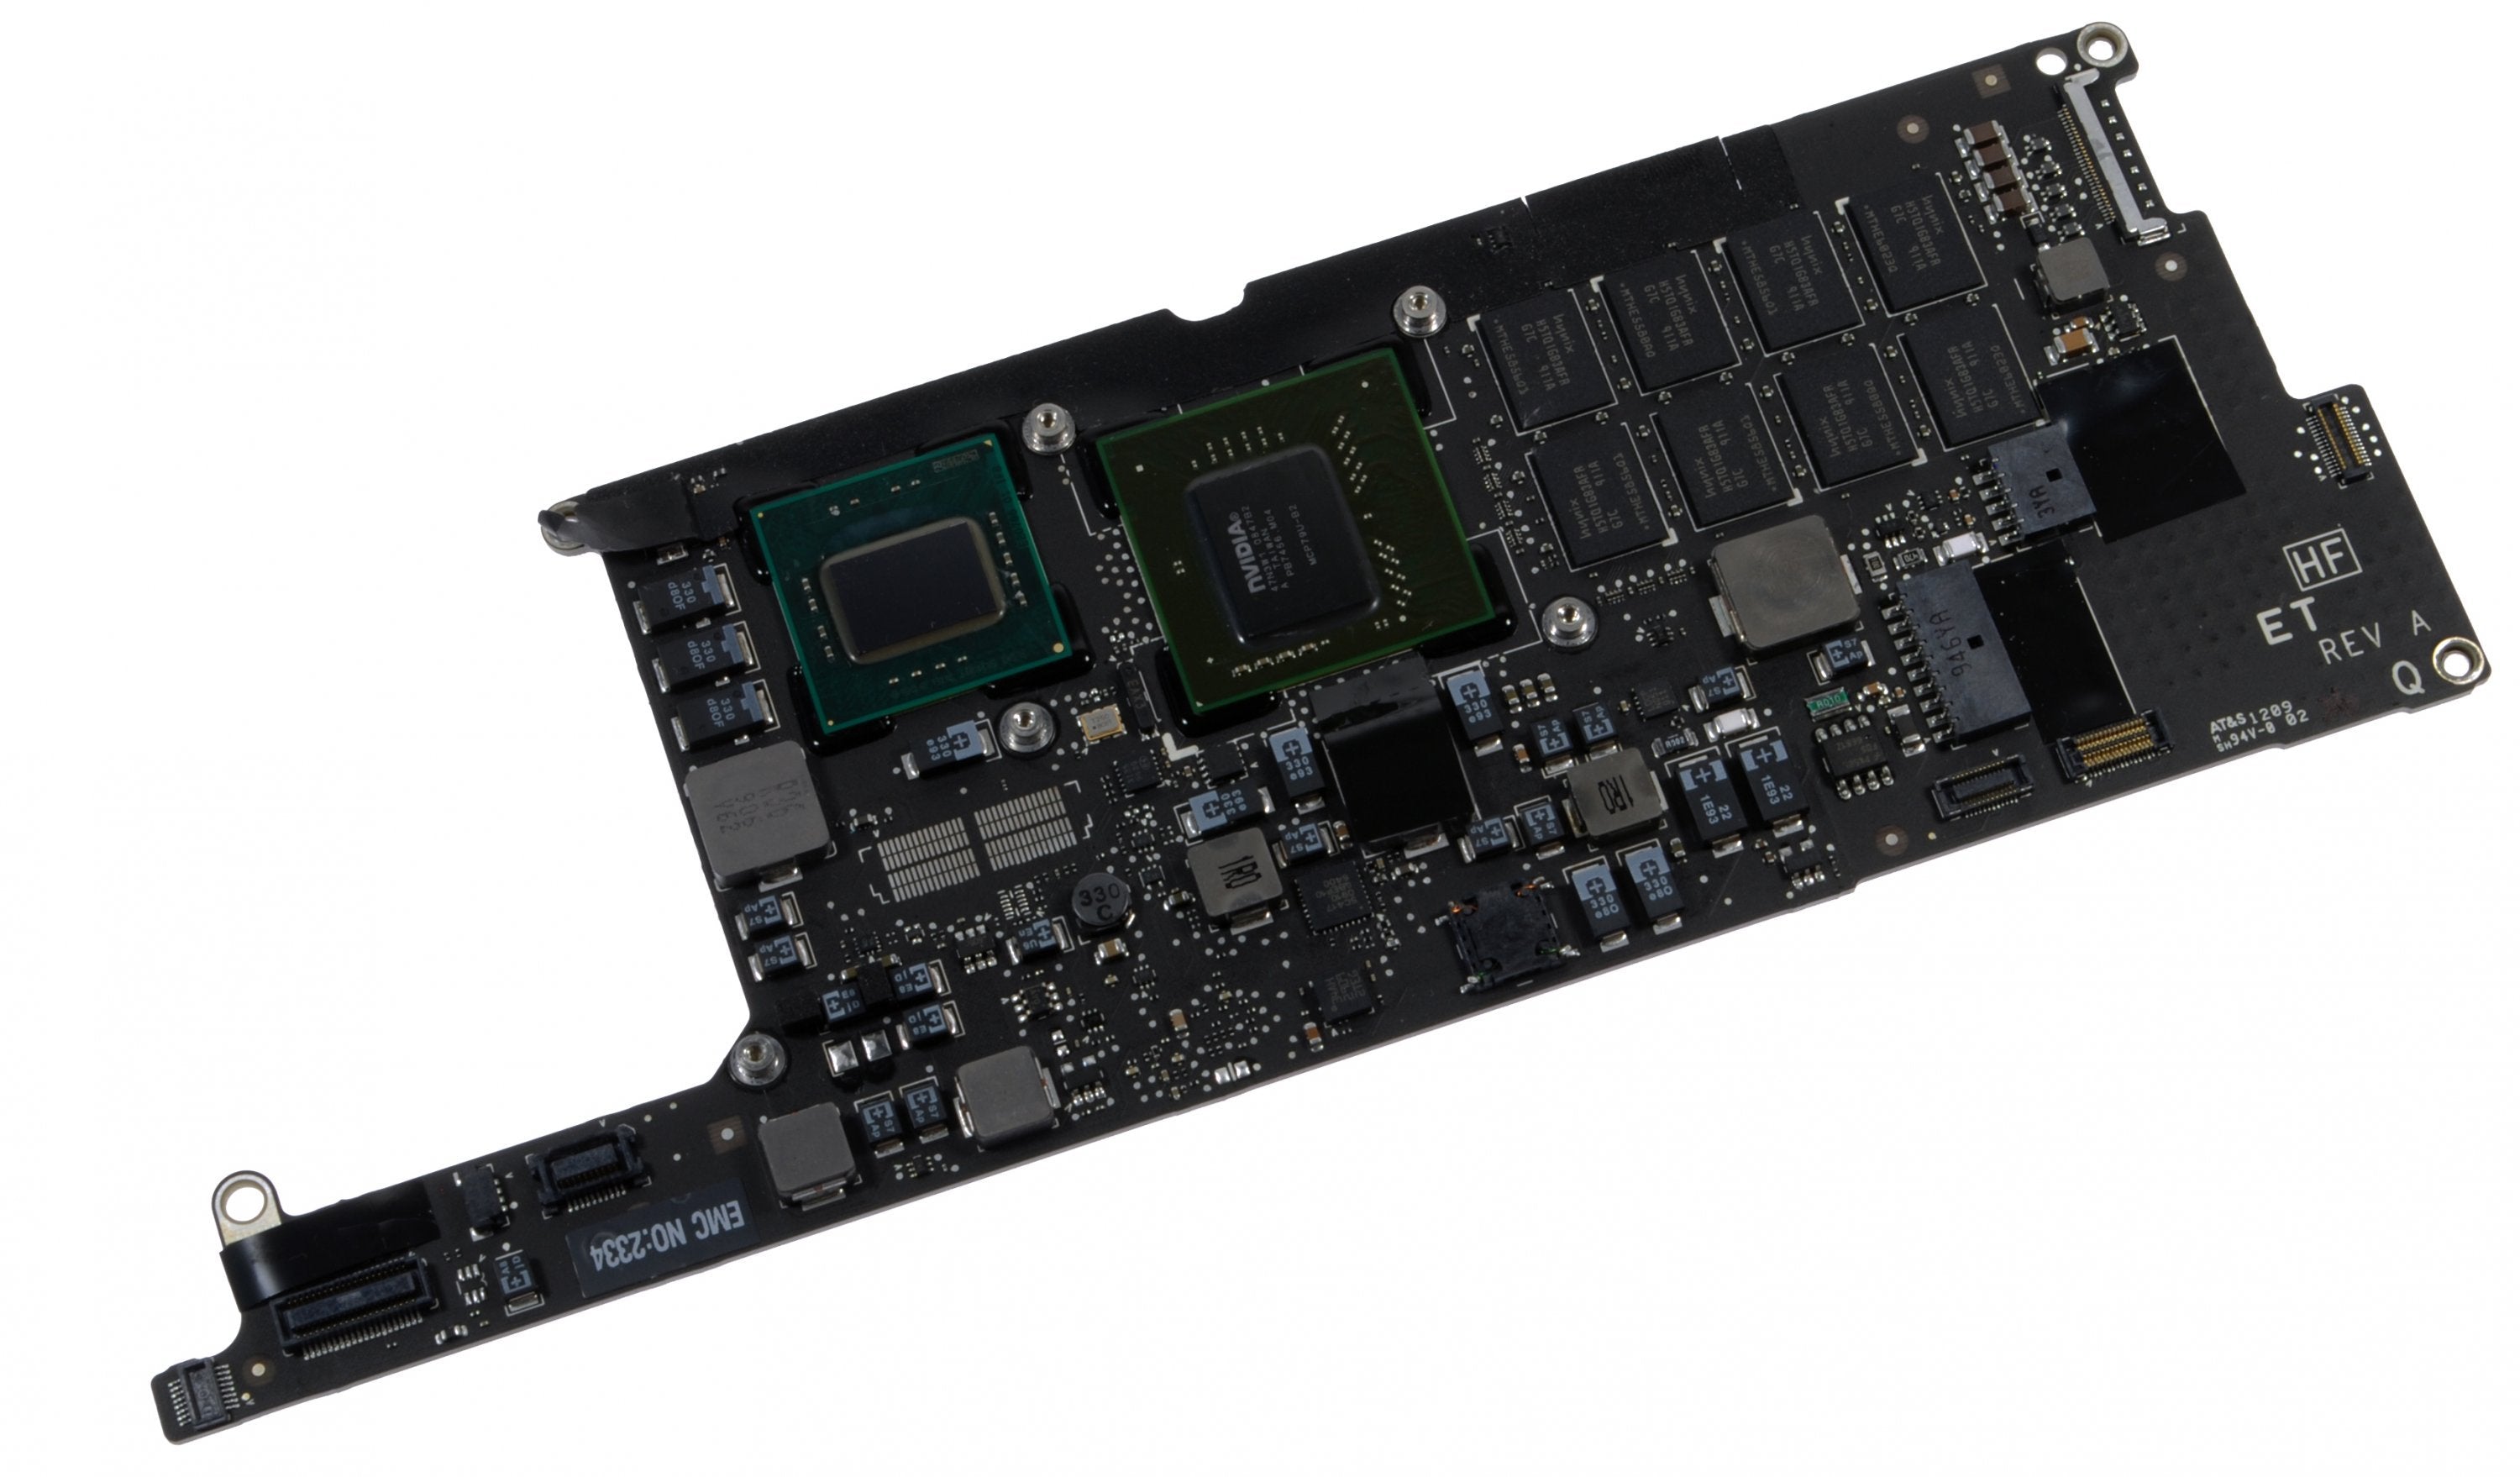 MacBook Air 1.86 GHz (Mid 2009) Logic Board